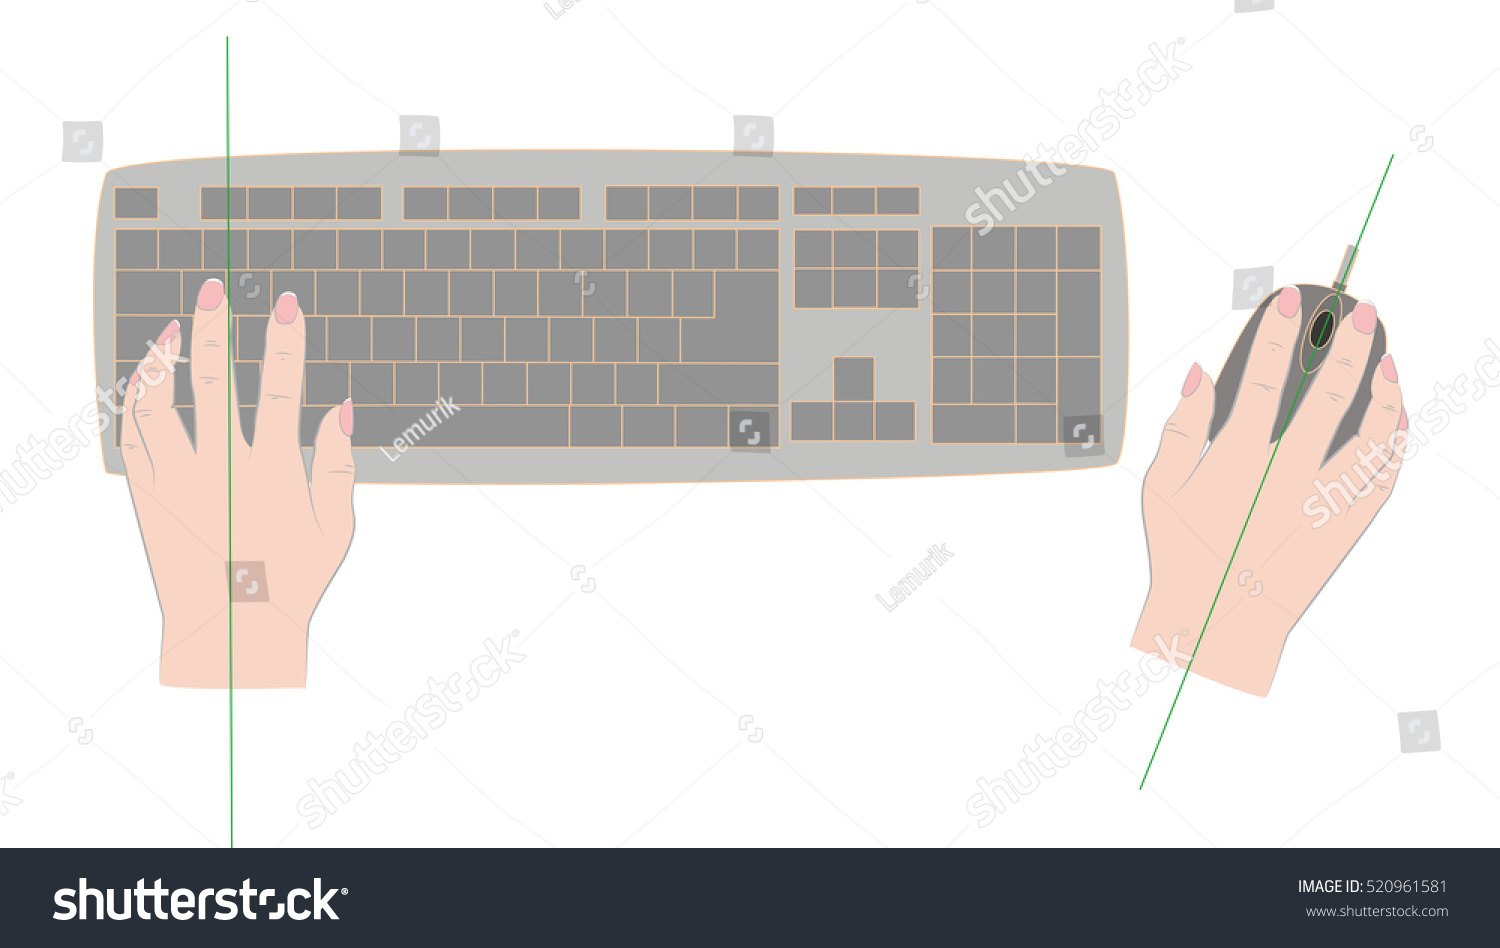 Правильное расположение мышки и клавиатуры на столе